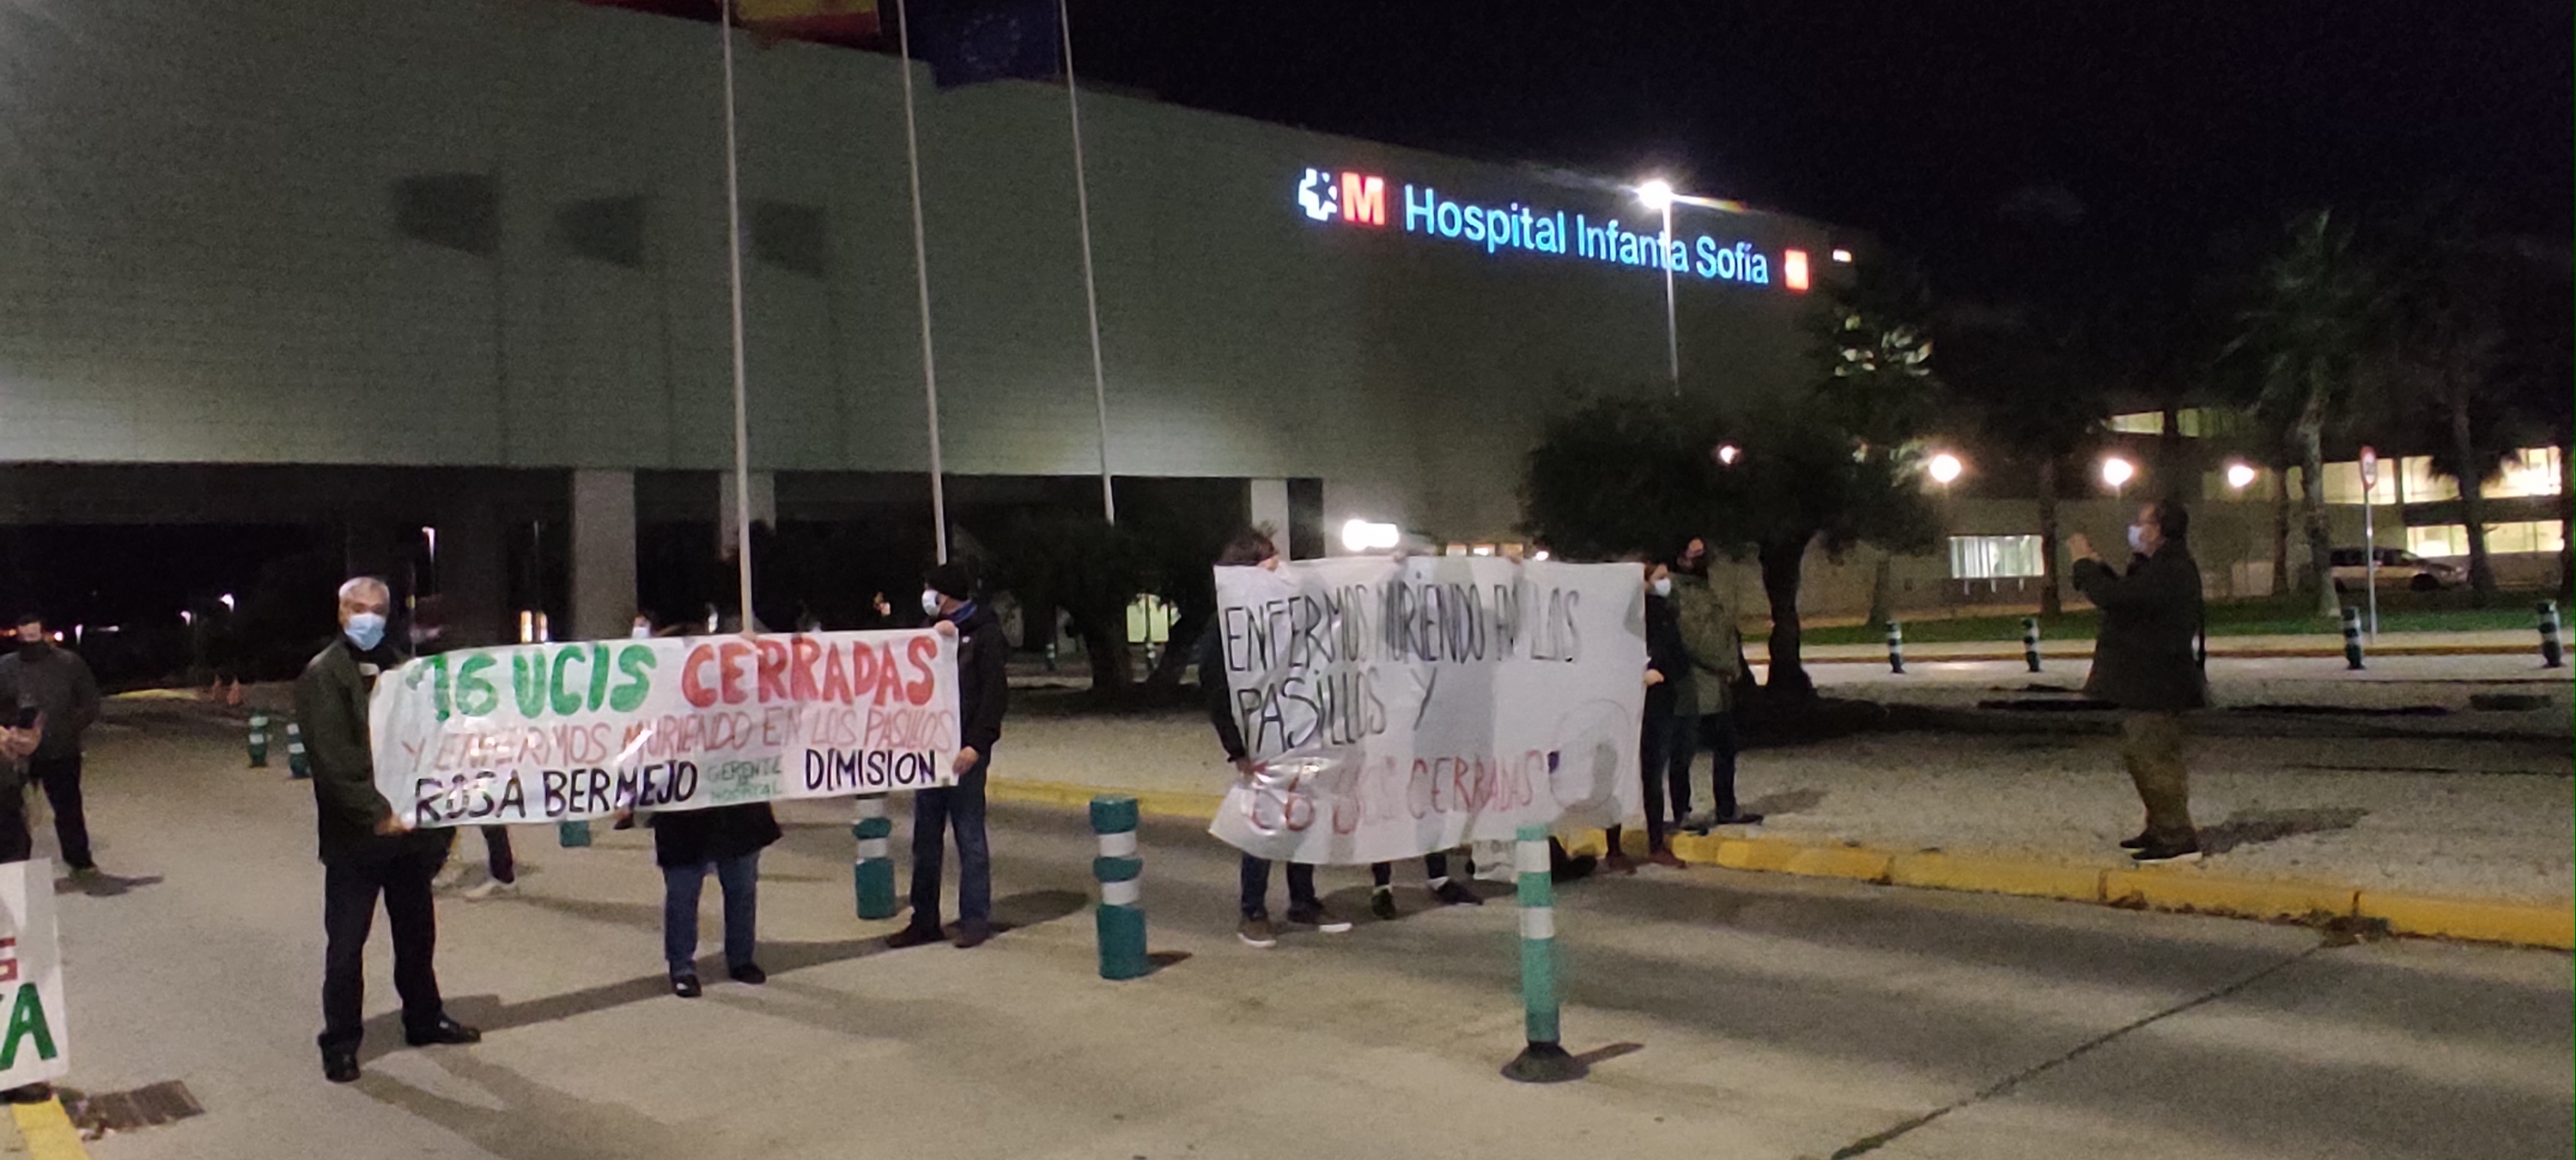 Sanidad pública: Los trabajadores hospital Infanta Sofía de Madrid advierten de las Urgencias un "colapso total" | Público